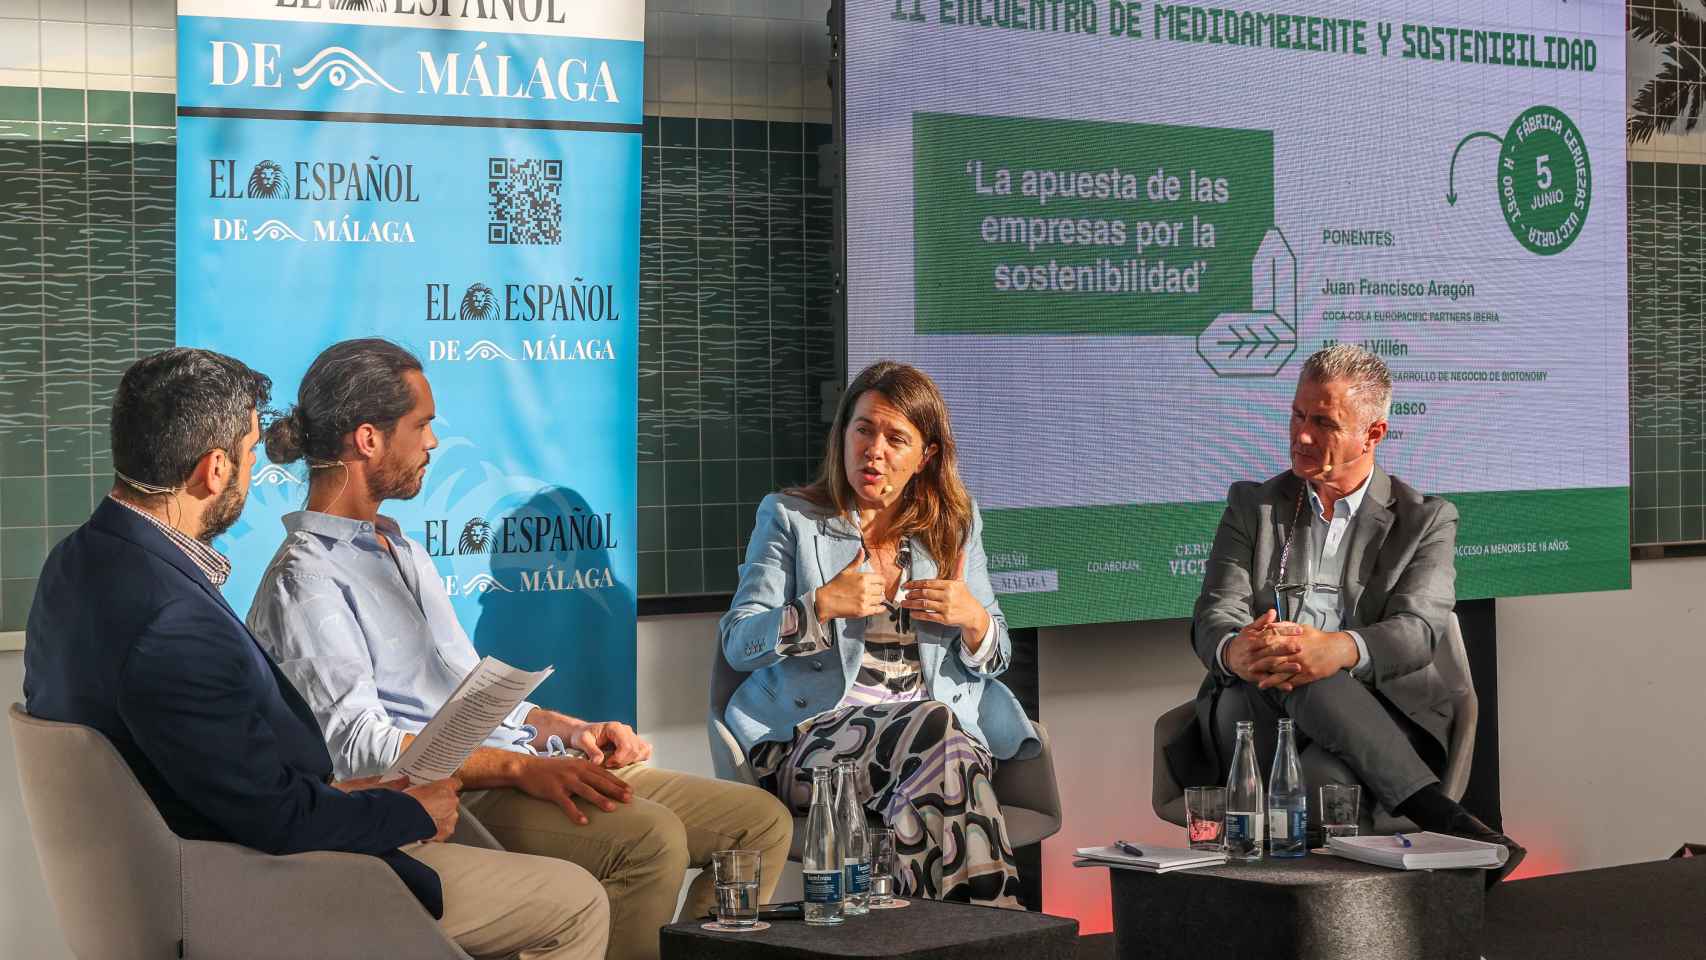 Miguel Villén, Alicia Carrasco y Juan Francisco Aragón en la mesa redonda.